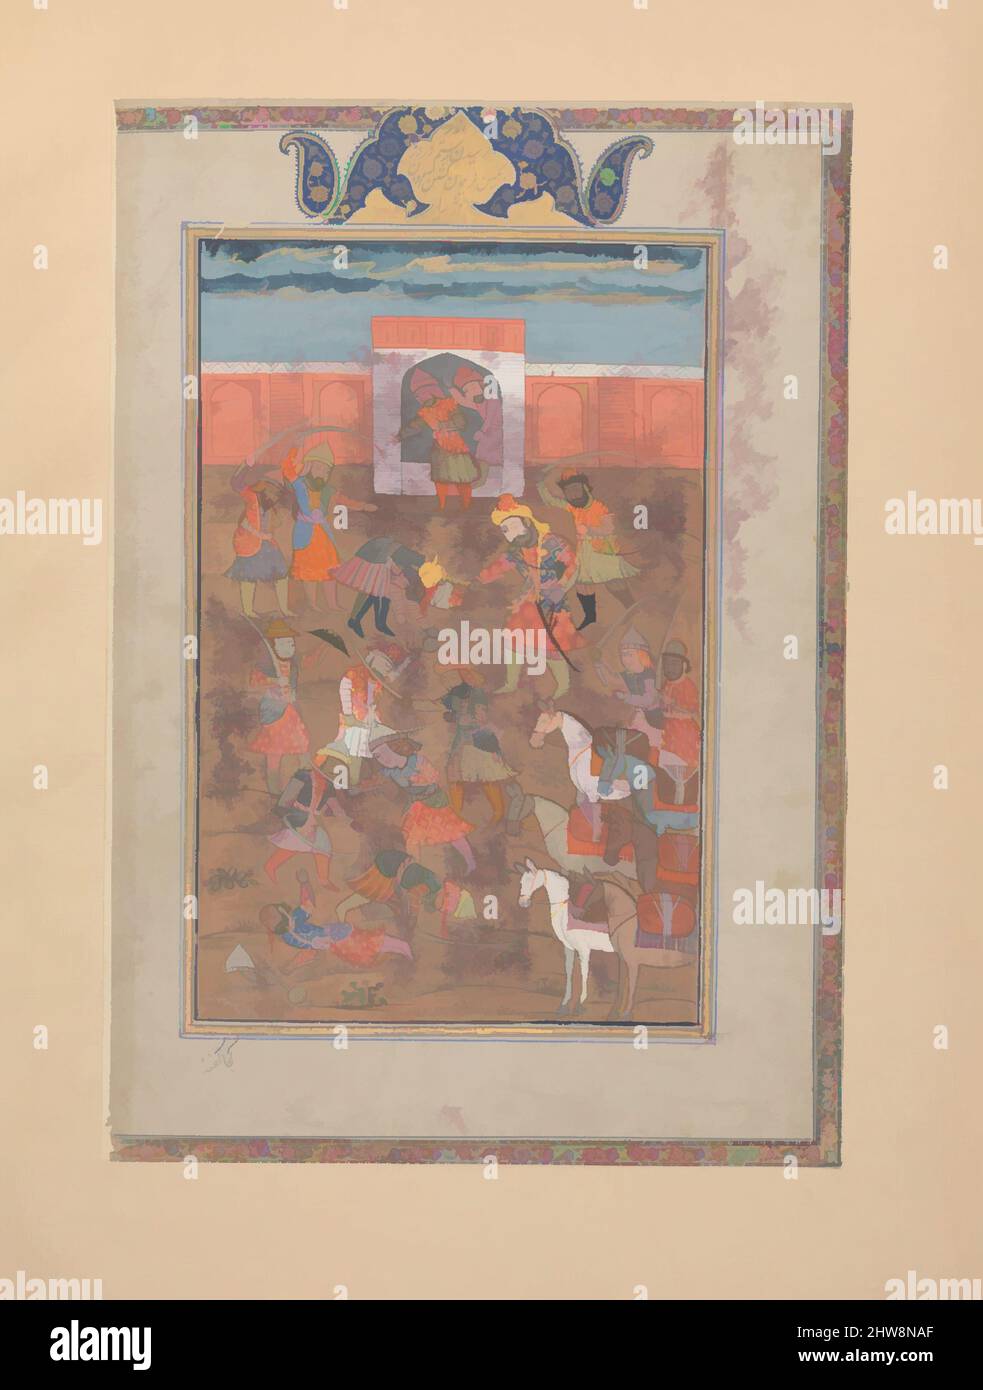 L'arte ispirata da Rustam cattura la Cittadella del Monte Sipand', Folio da uno Shahnama (Libro dei Re), fine 19th-inizio 20th secolo, attribuita a India, Kashmir, inchiostro, acquerello opaco, argento, e oro su carta, 12 7/16 x 8 9/16in. (31,6 x 21,7cm), Codices, Abu'l Qasim Firdausi (935–, opere classiche modernizzate da Artotop con un tocco di modernità. Forme, colore e valore, impatto visivo accattivante sulle emozioni artistiche attraverso la libertà delle opere d'arte in modo contemporaneo. Un messaggio senza tempo che persegue una nuova direzione selvaggiamente creativa. Artisti che si rivolgono al supporto digitale e creano l'NFT Artotop Foto Stock